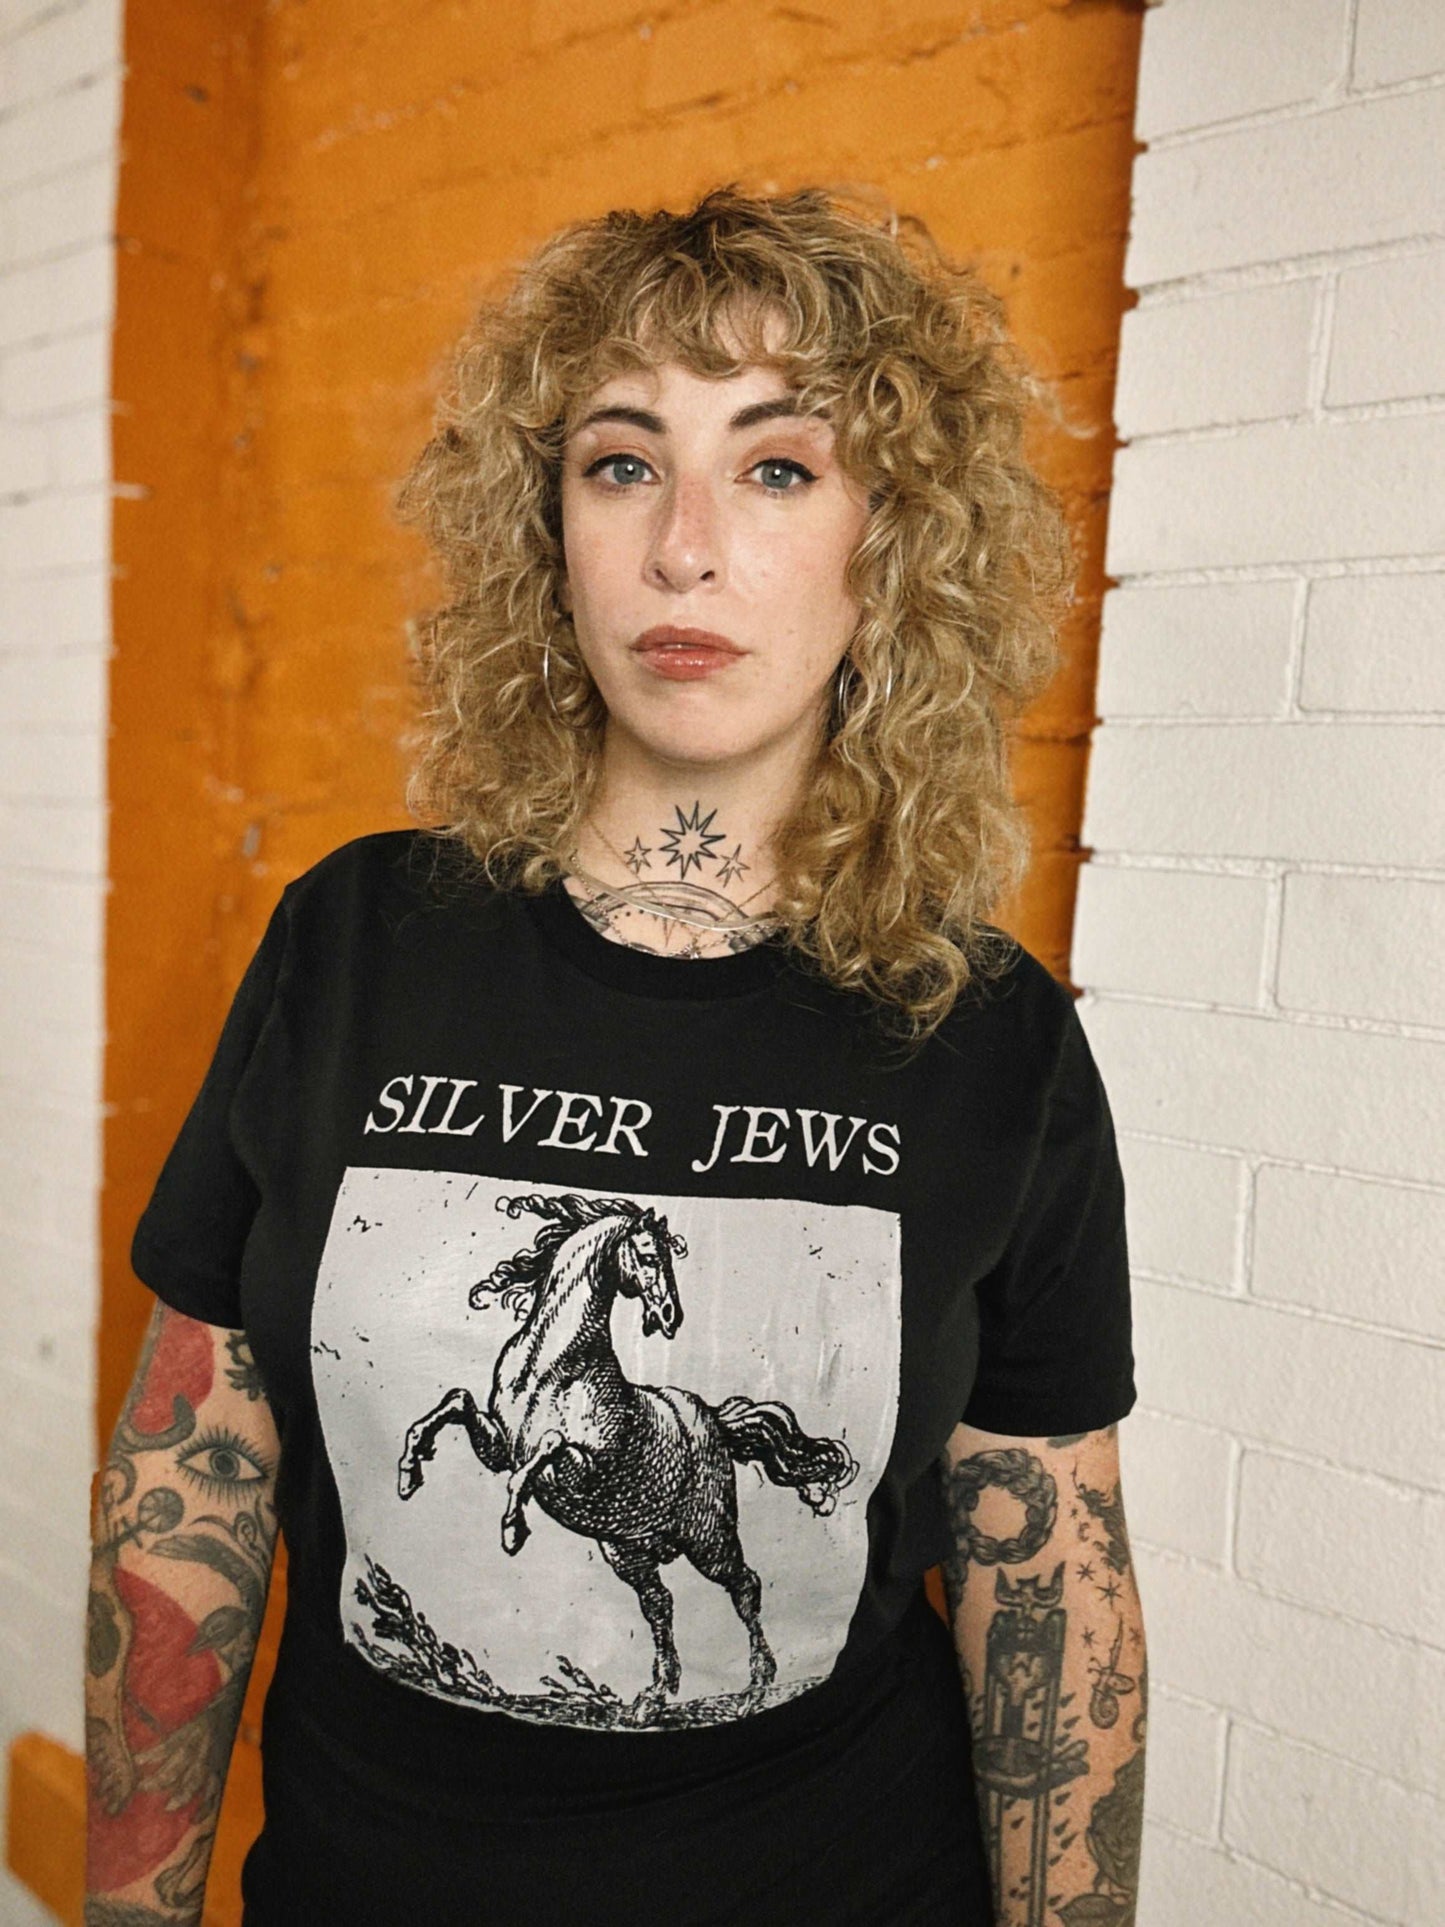 Silver Jews Tribute Punk T-Shirt